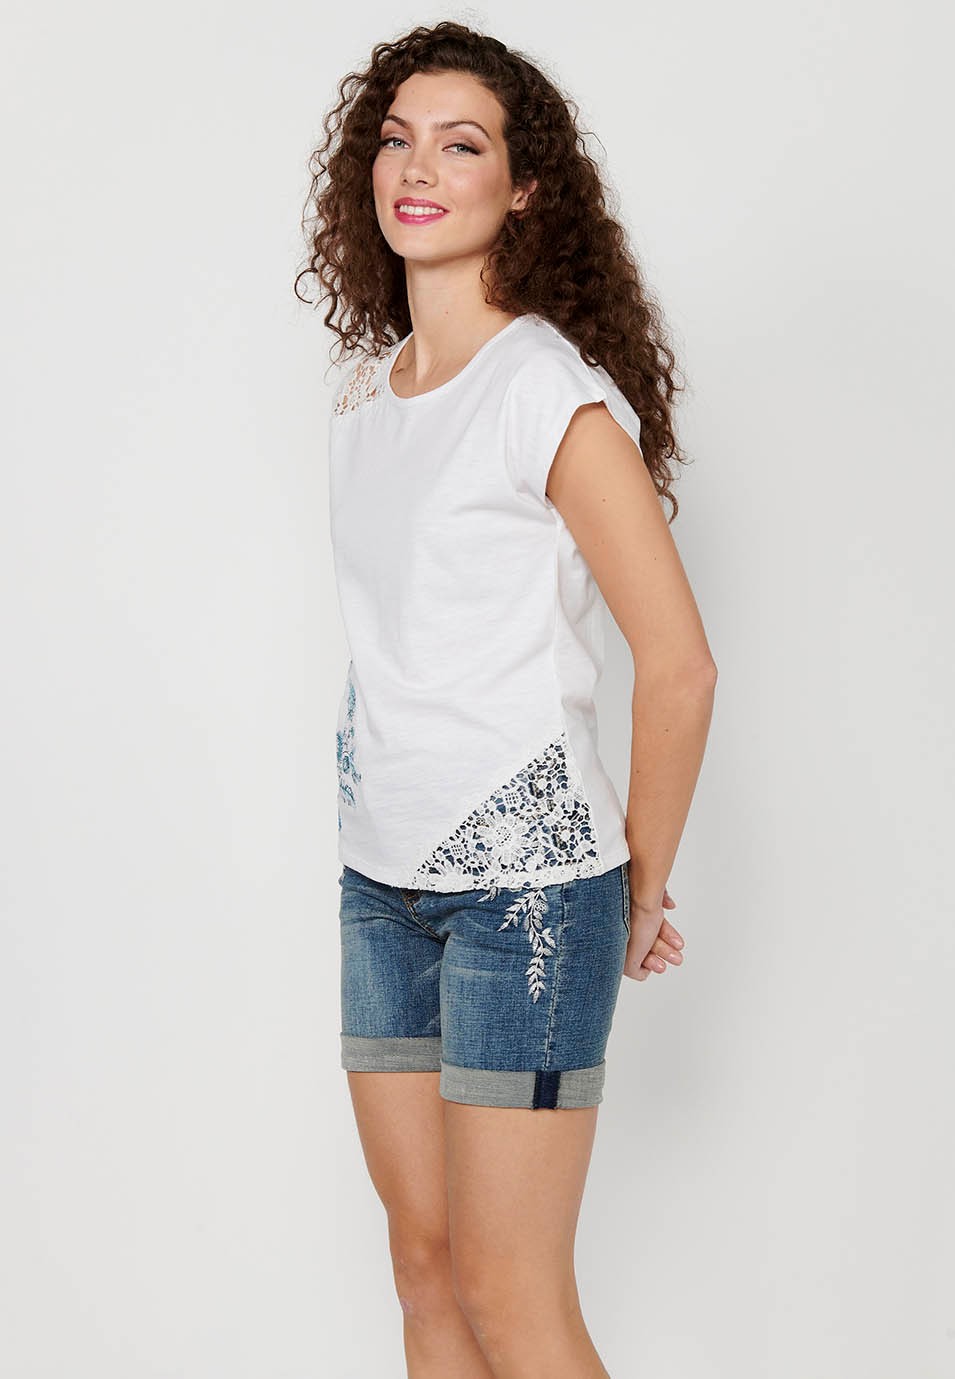 Camiseta de manga corta Top de Algodón con Cuello redondo y Bordado floral delantero de Color Blanco para Mujer 5